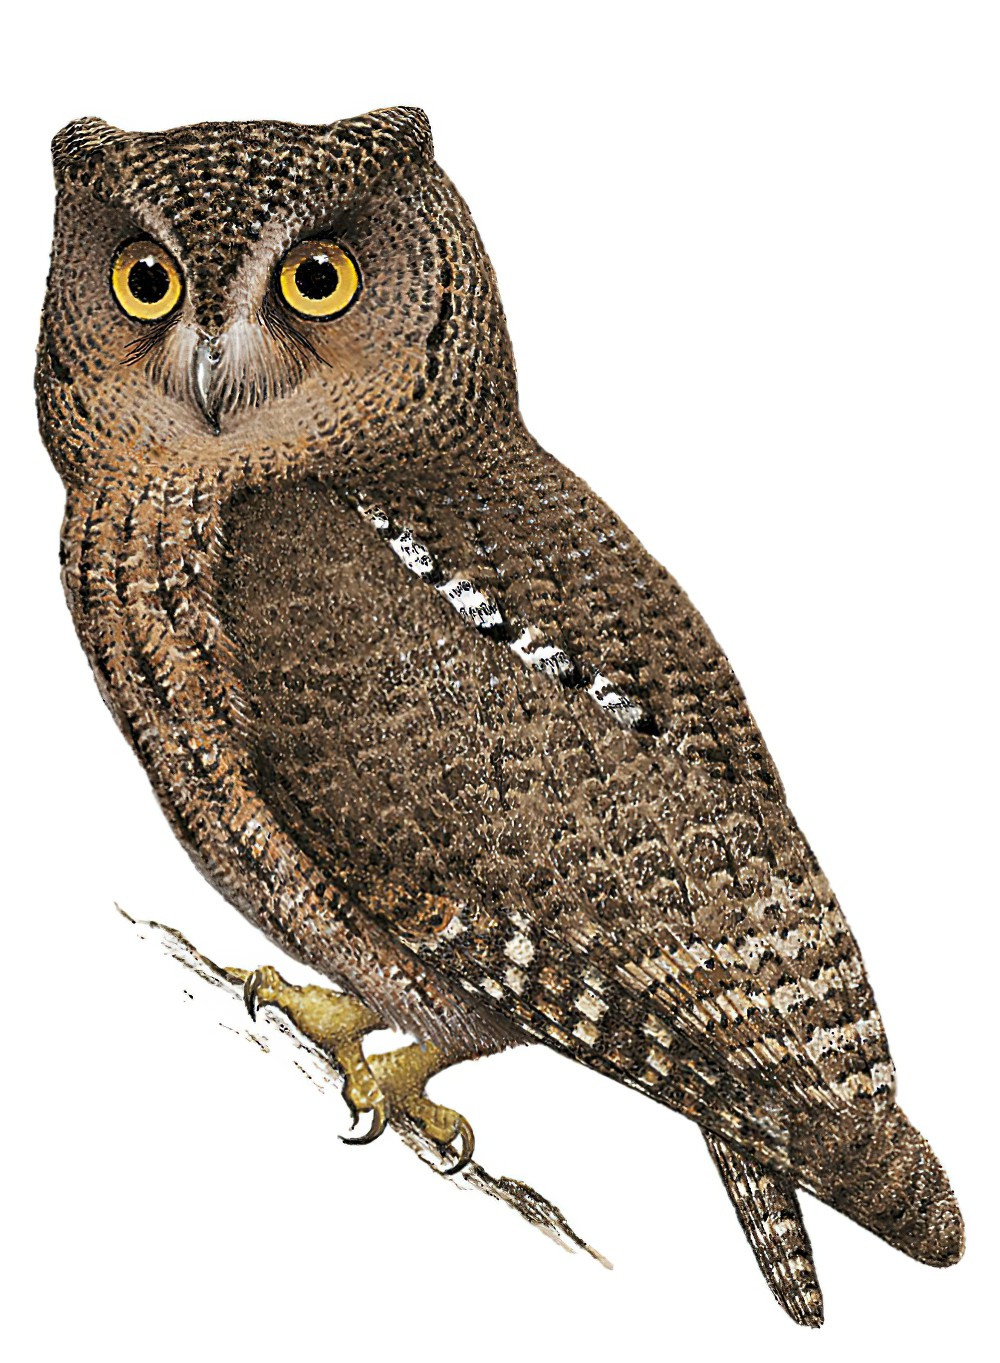 Sula Scops-Owl / Otus sulaensis